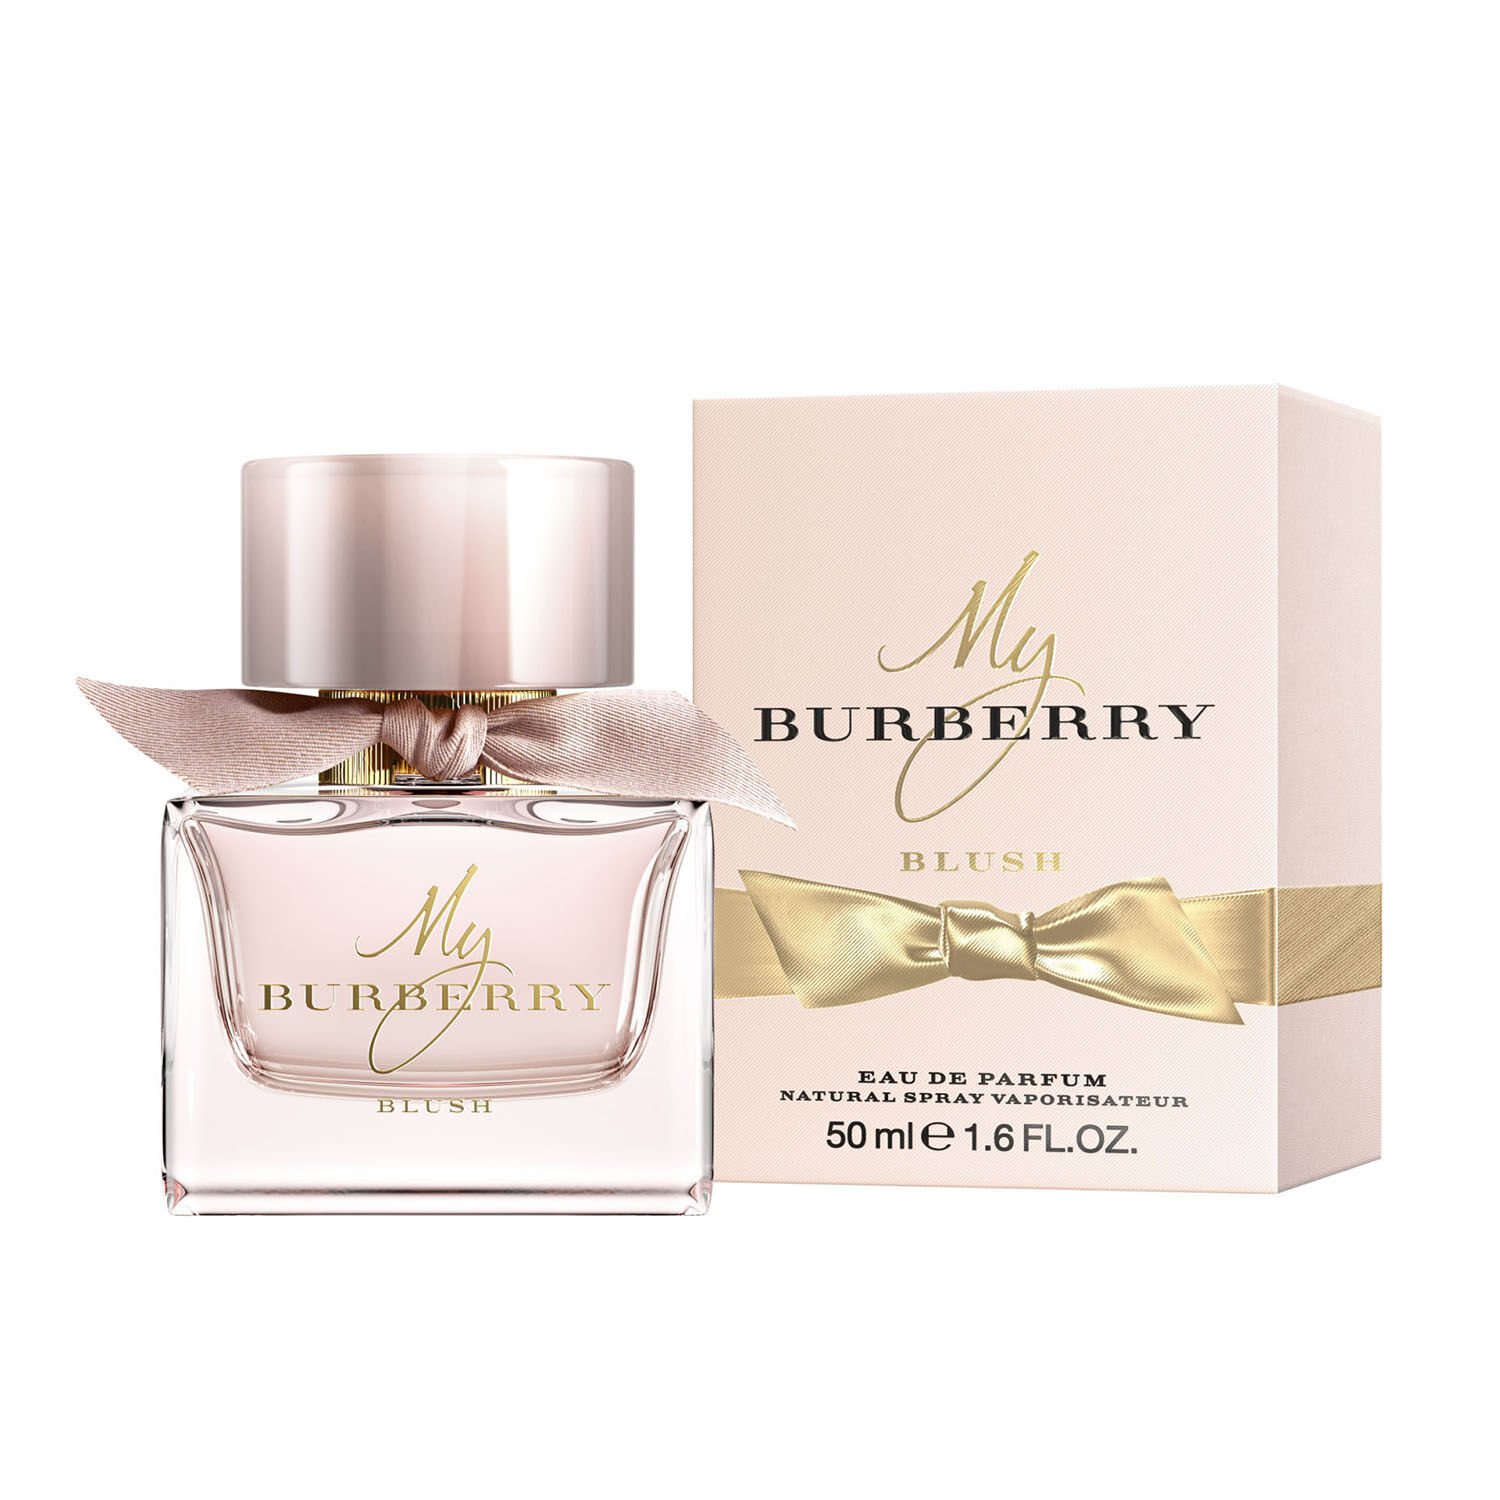 Buy My Burberry Blush Eau de Parfum 